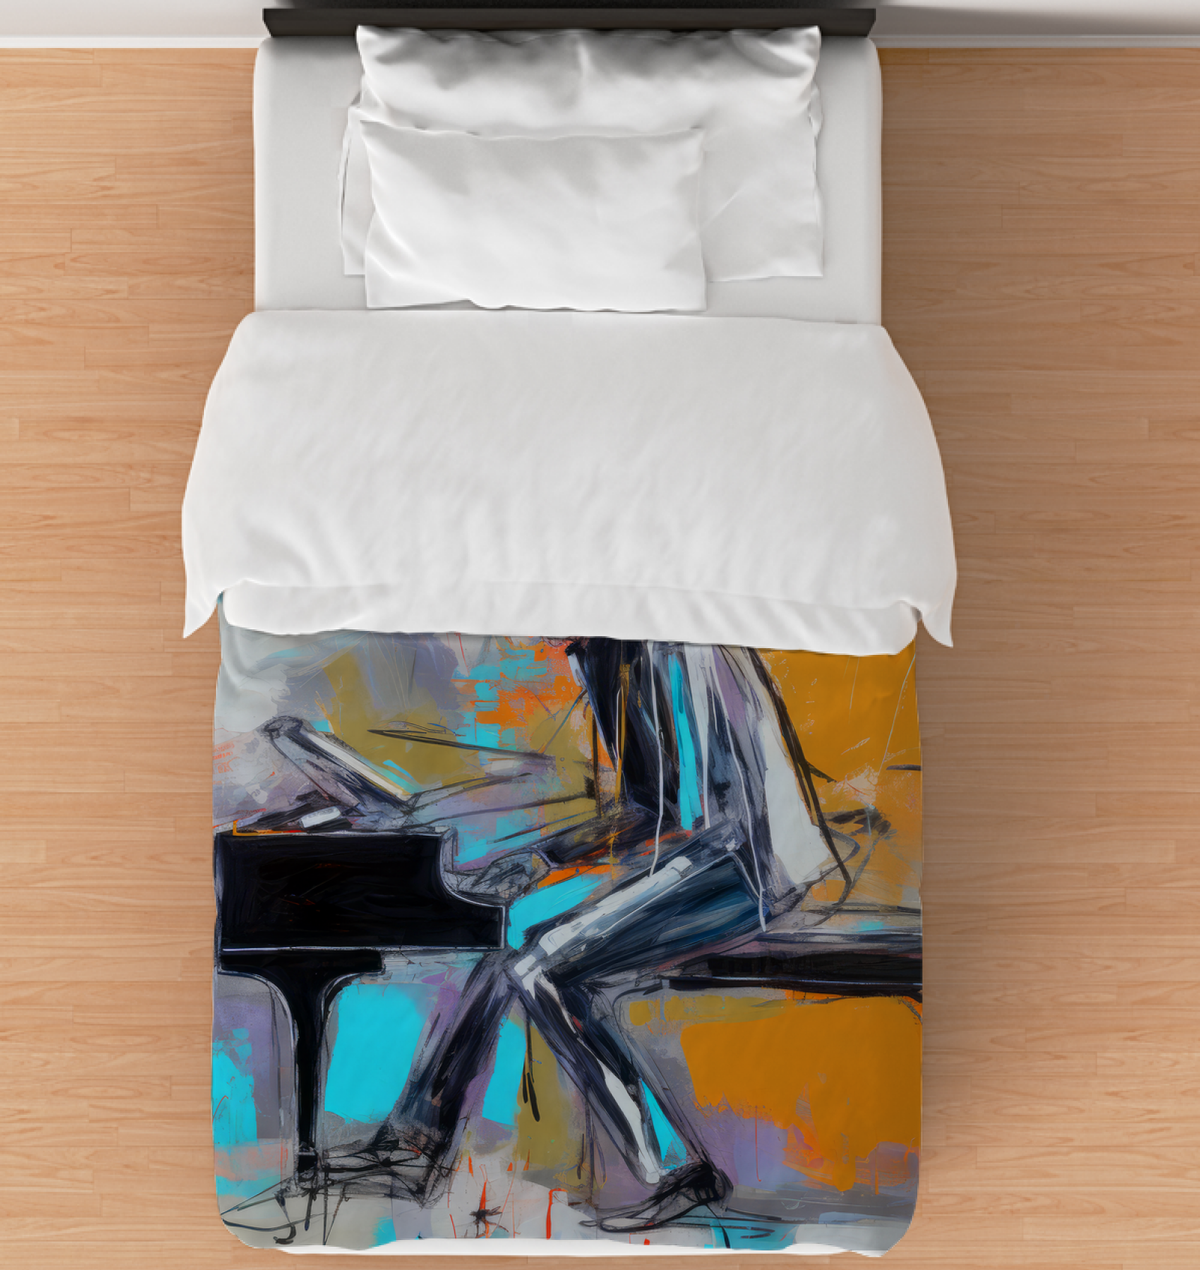 Wave Whisper Comforter showcasing its serene ocean-inspired design.